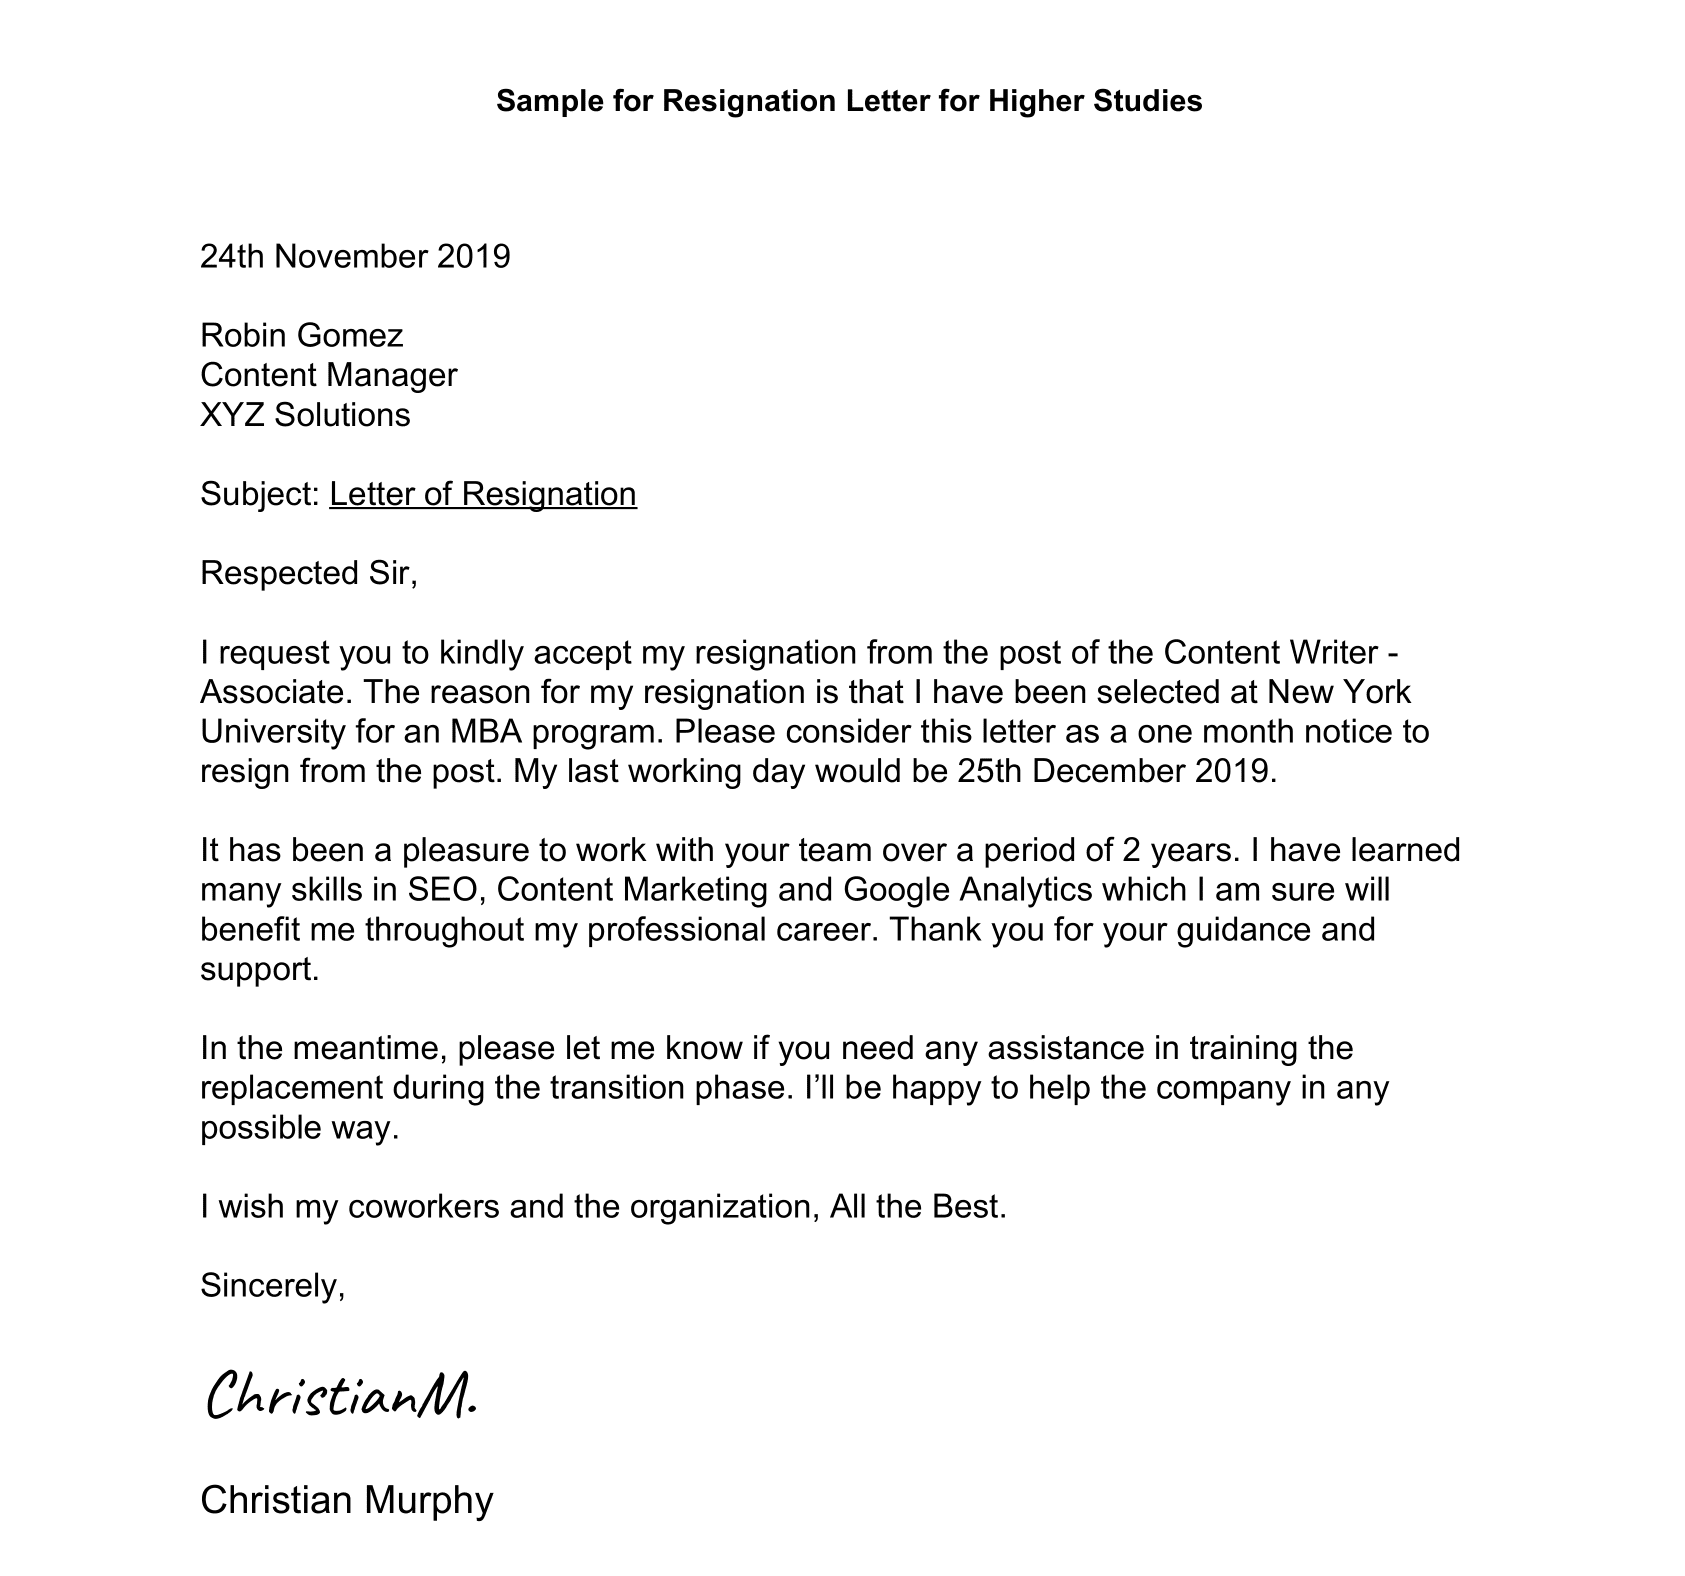 Resignation Letter For Higher Studies Sample 1 